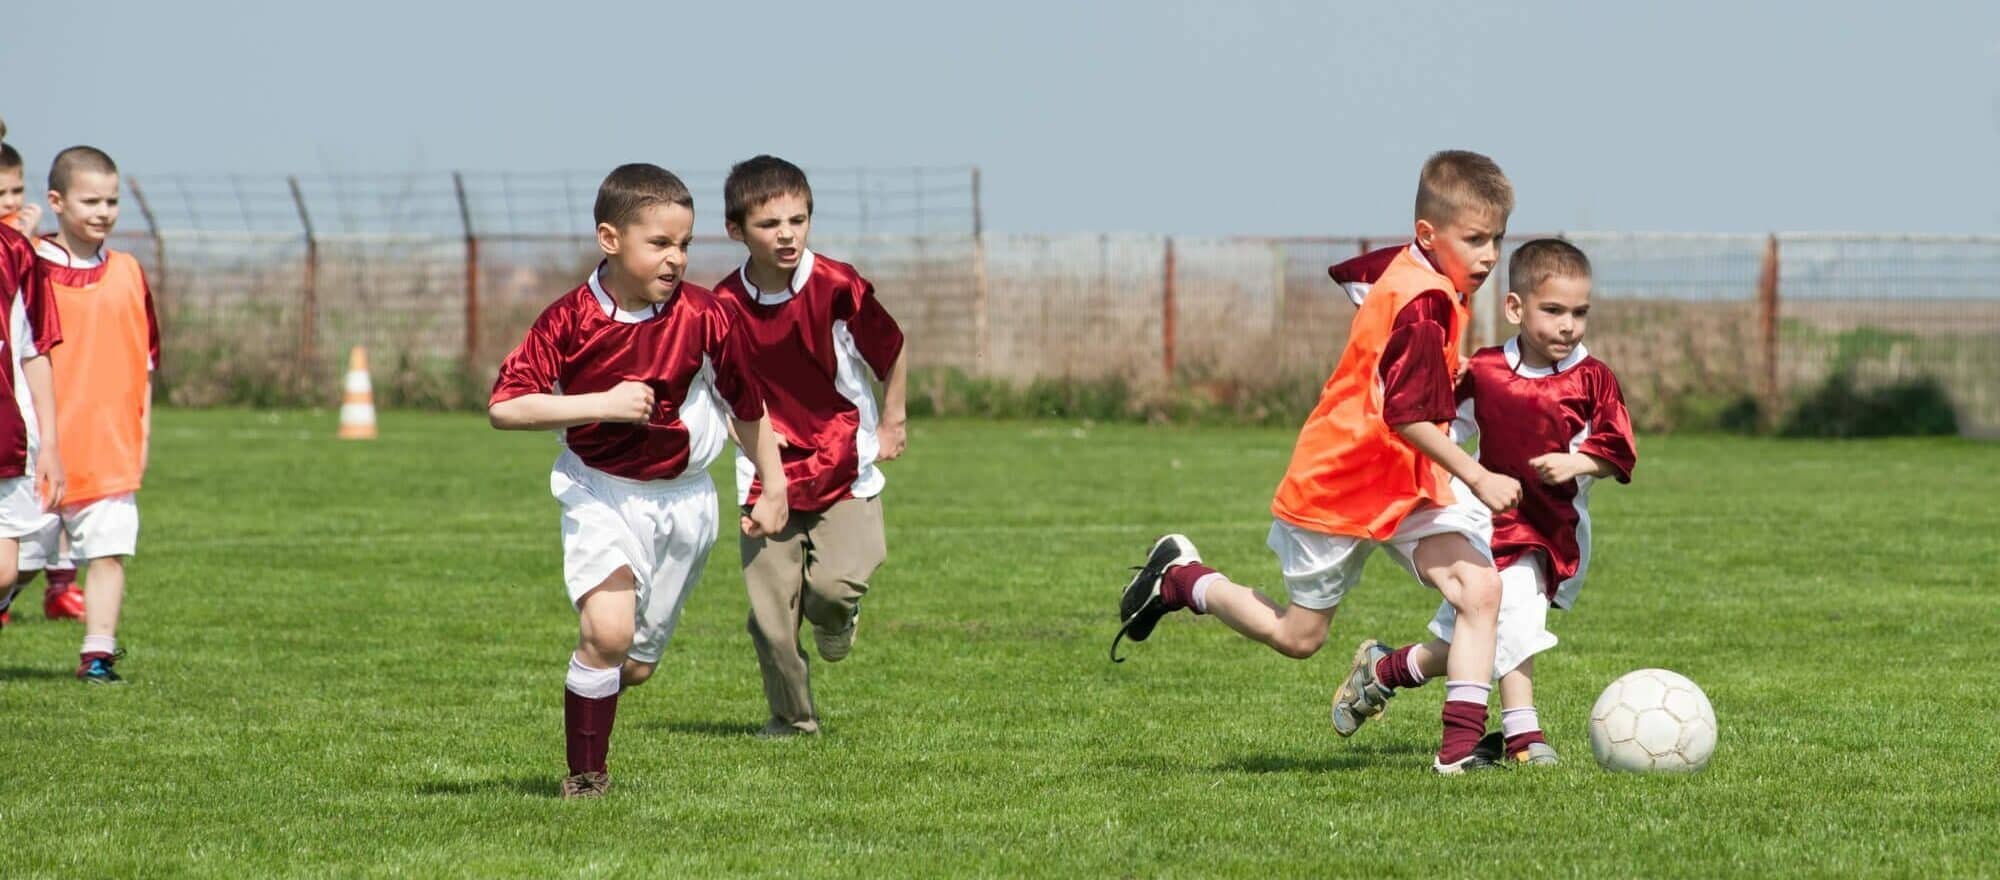 Там играют в футбол. Дети играют в футбол. Дети играющие в футбол. Фото игры в футбол. Мальчик играет в футбол.